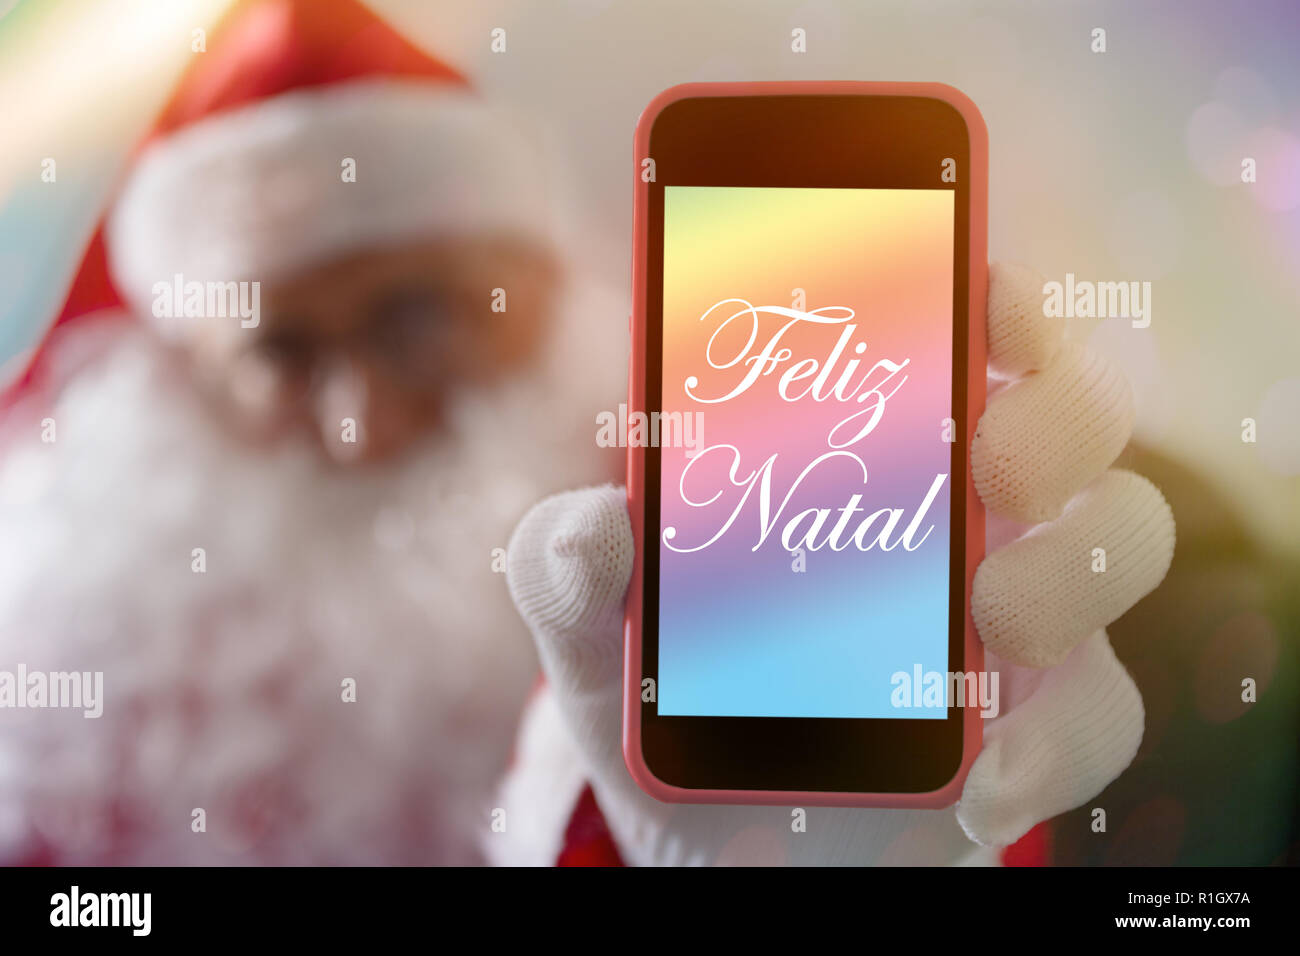 Botschaft Von Weihnachten In Portugiesisch Feliz Natal Von Santa Claus Oder Sankt Nikolaus Handy Unscharfer Hintergrund Mit Weihnachtsmann Stockfotografie Alamy